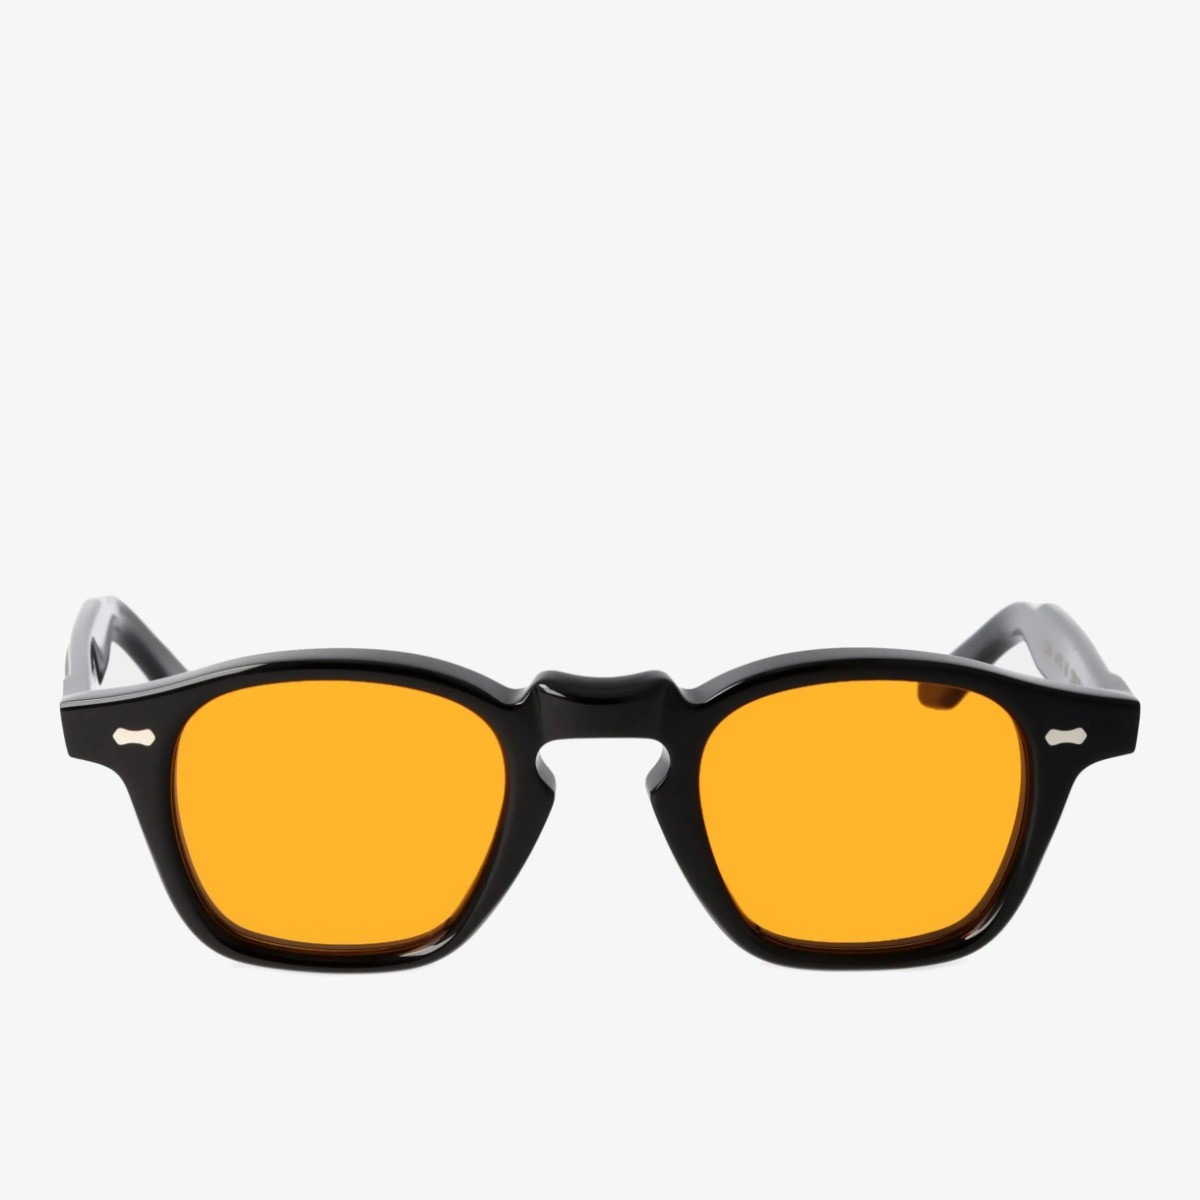 TBD Eyewear Cord saulės akiniai juodais rėmeliais ir geltonais lęšiais